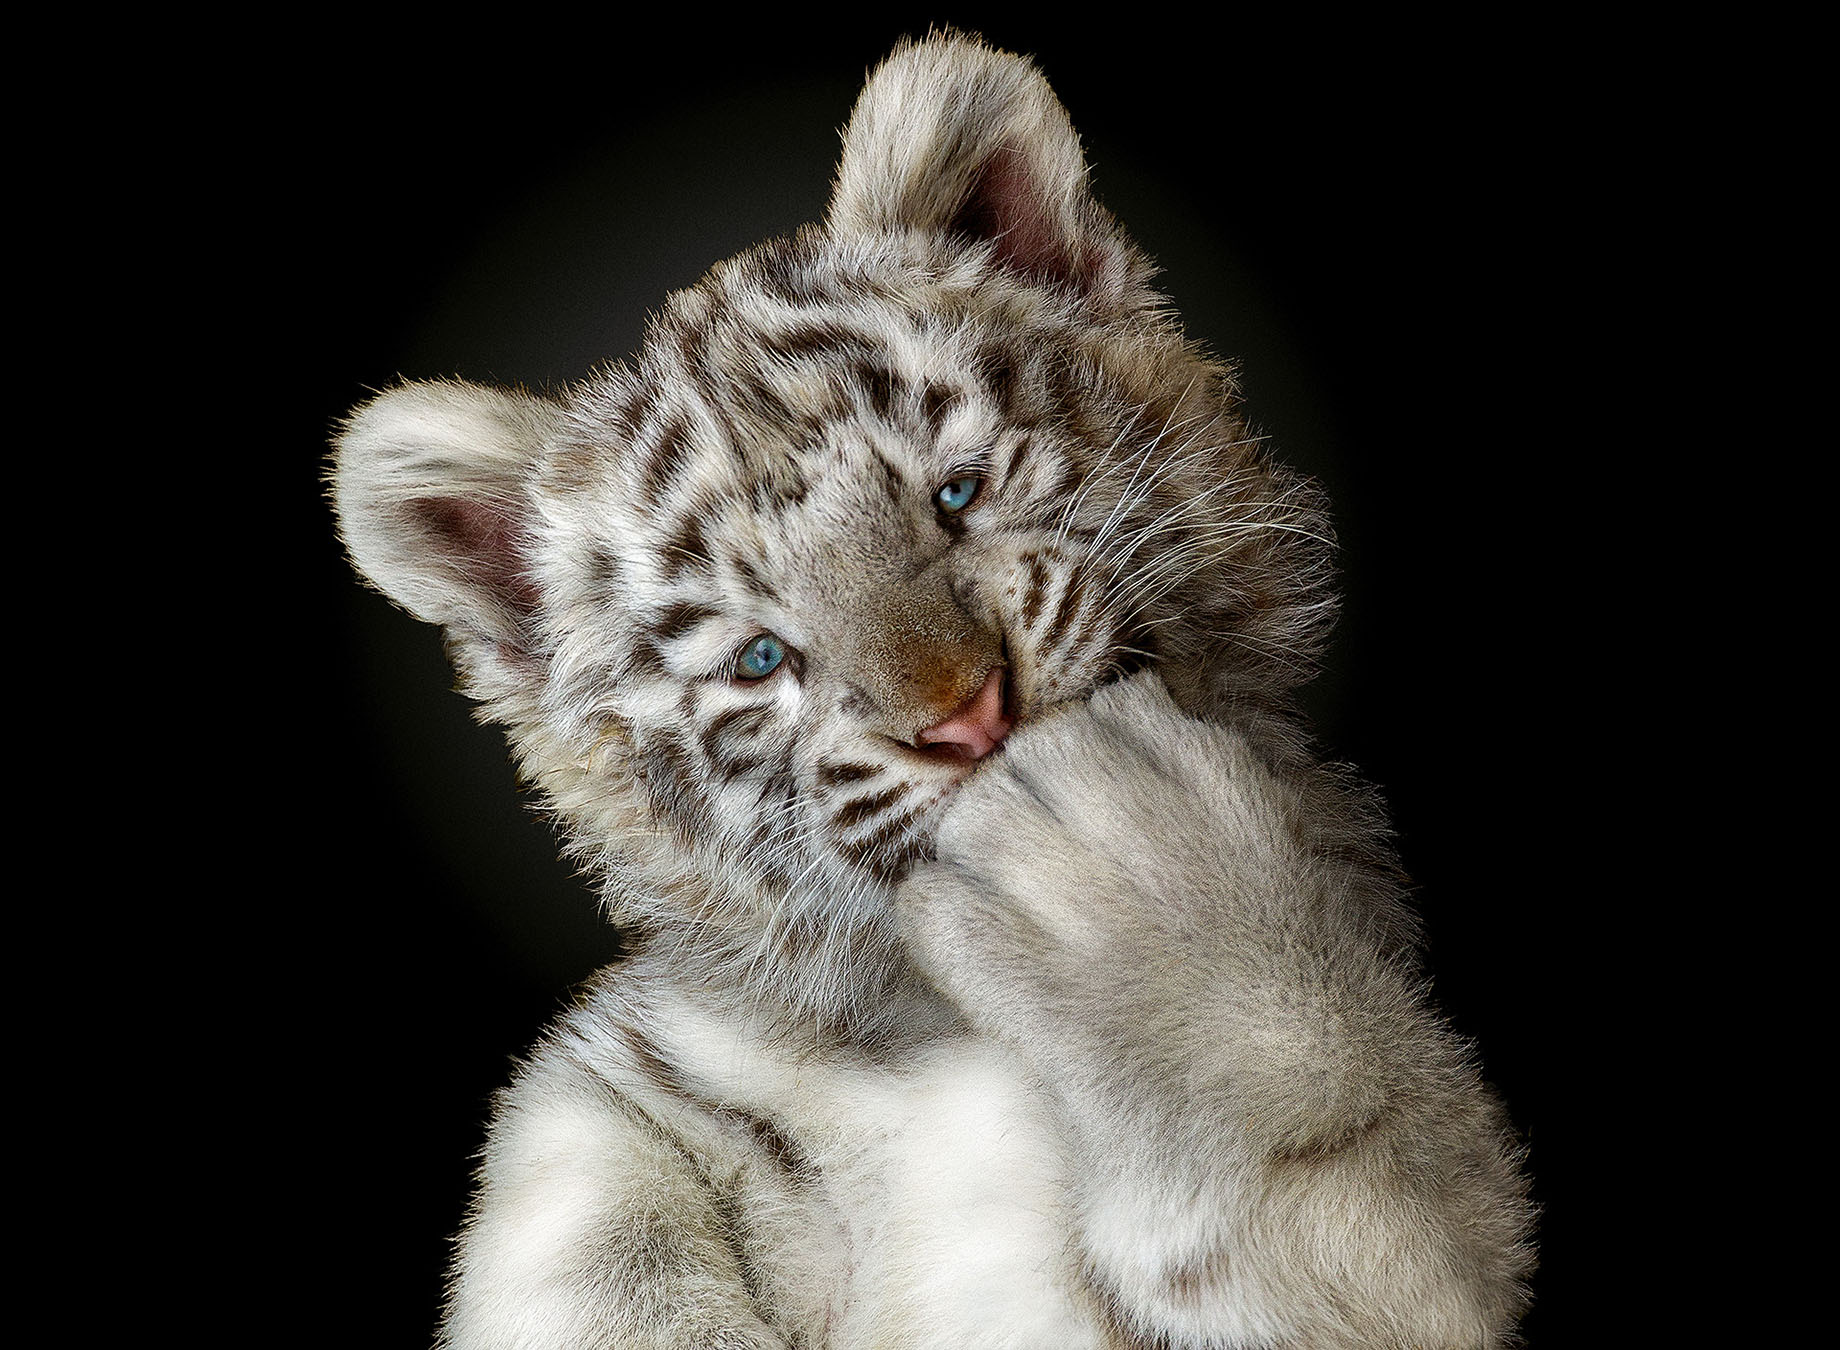 Le tigre blanc, résultat d’une anomalie génétique